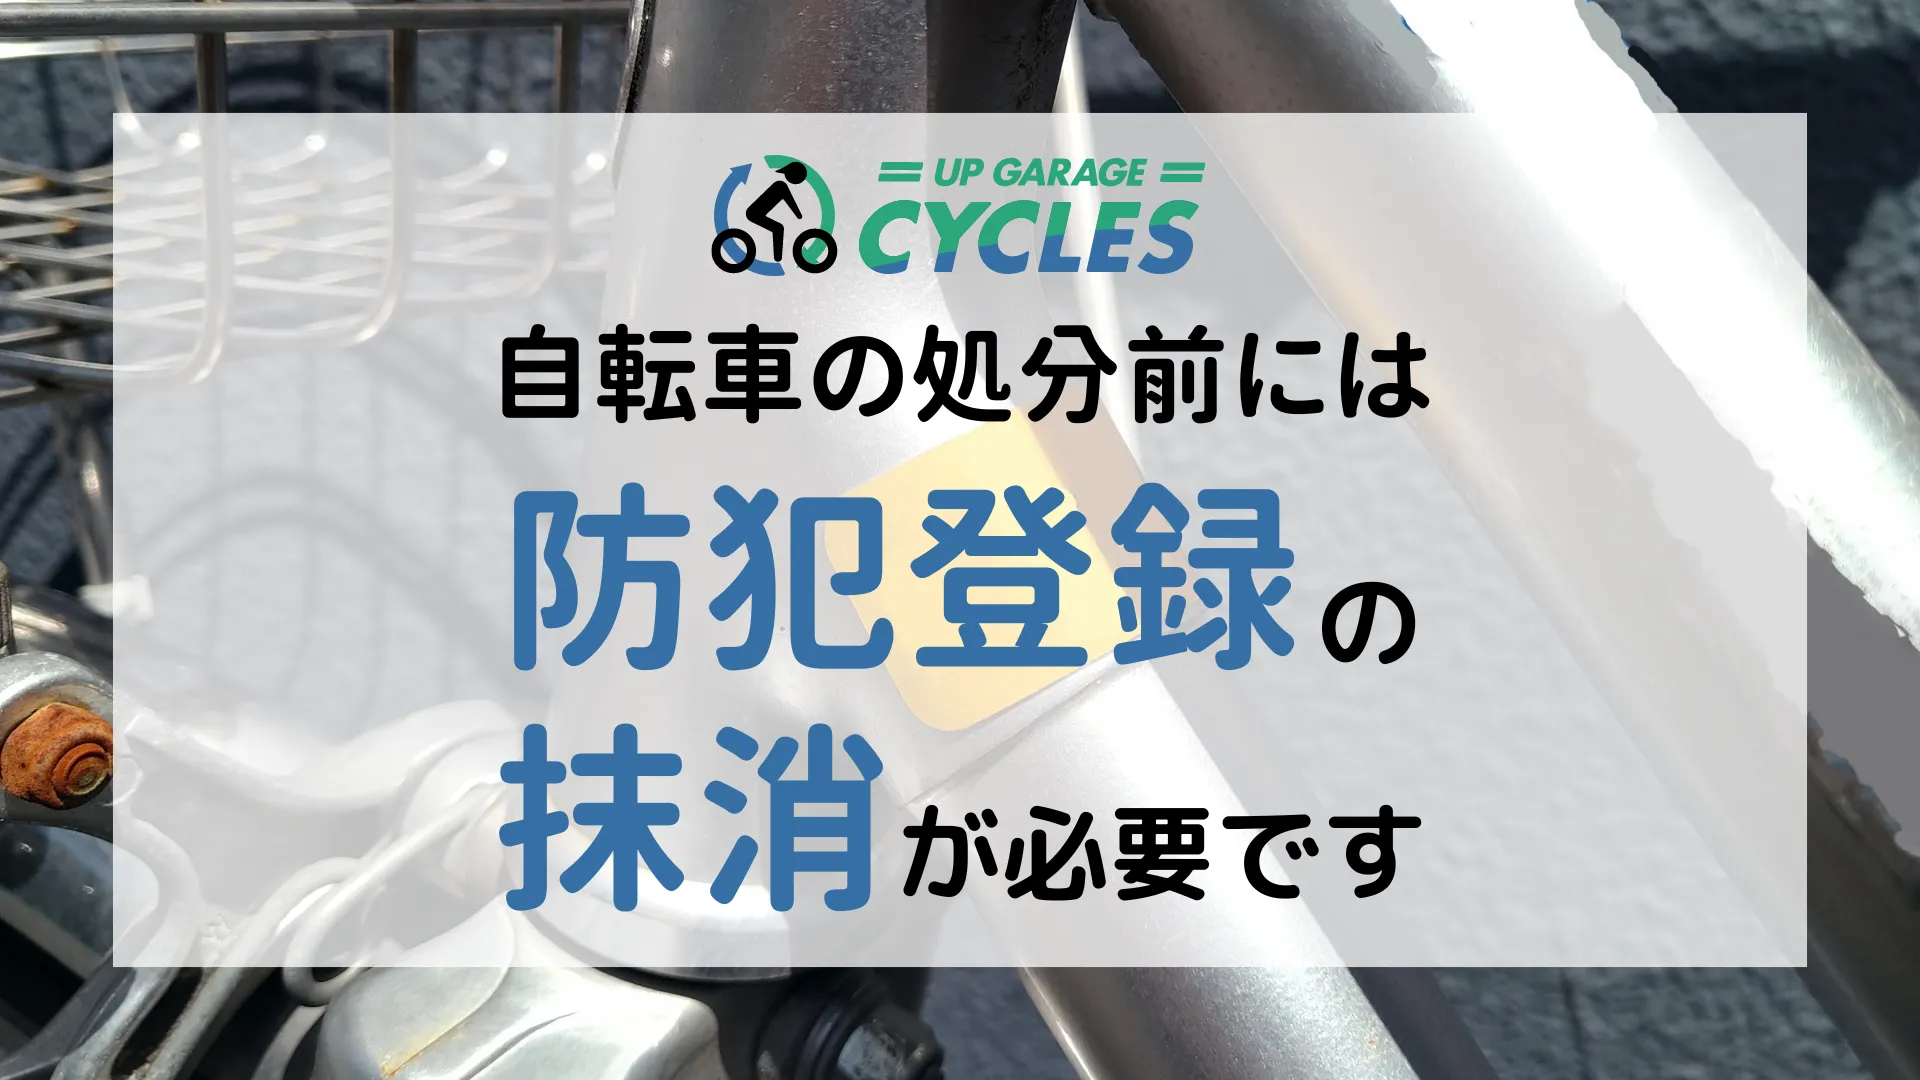 注意】自転車の処分前には必ず防犯登録の抹消手続きが必要です 